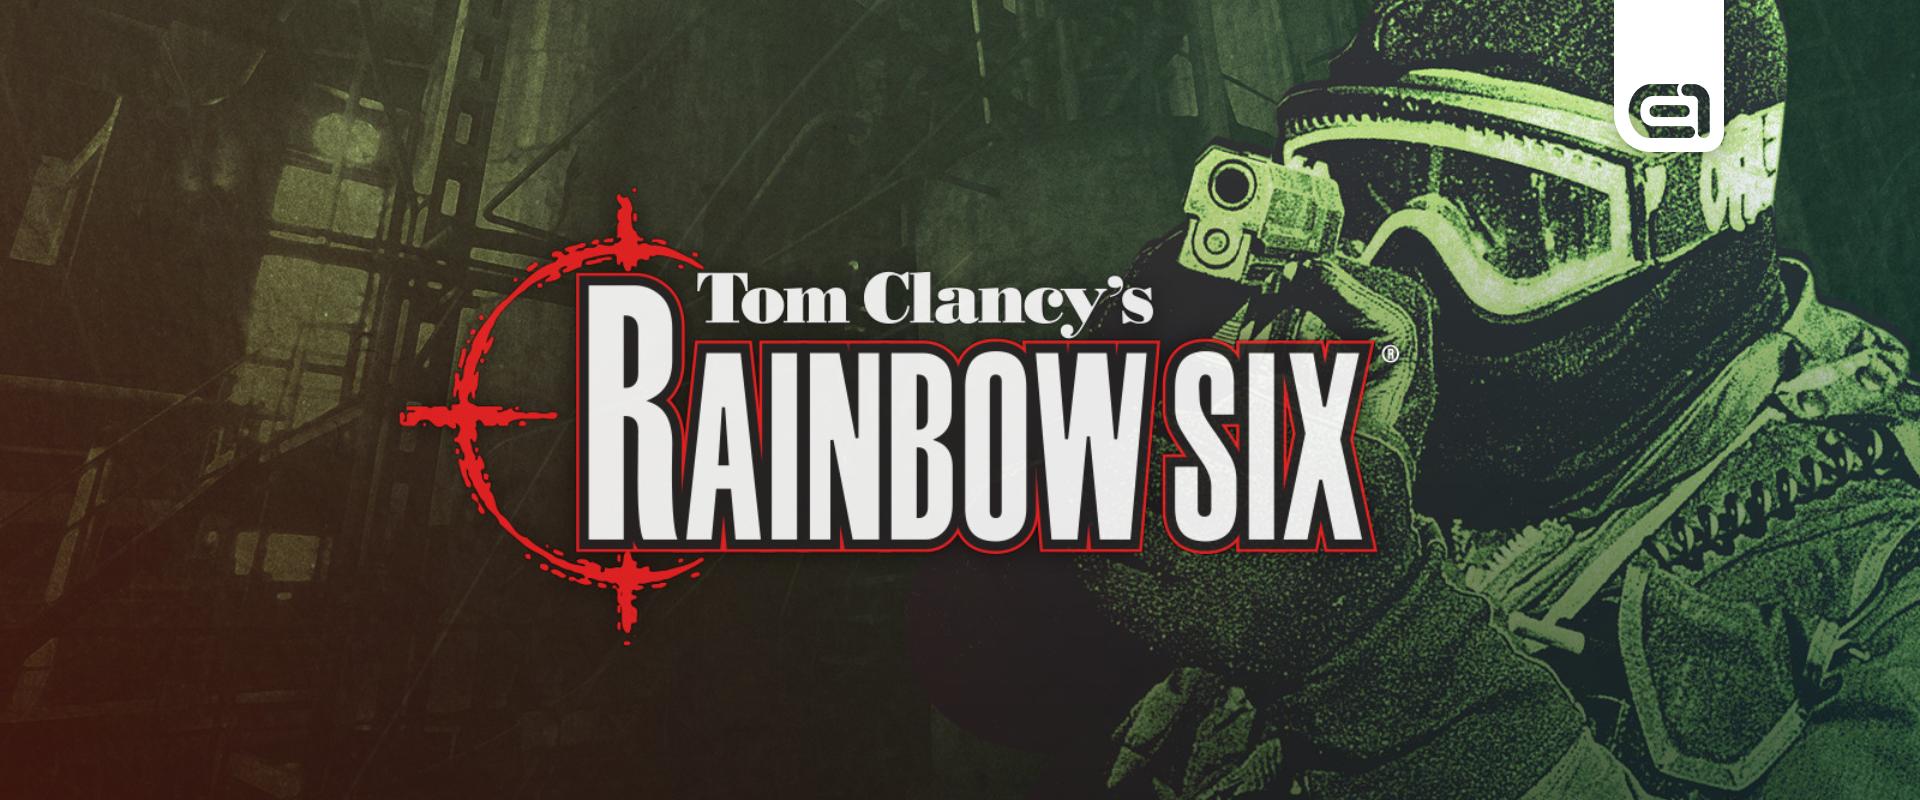 Tom Clancy's The Rainbow Six-film készül és már megvan a főszereplő is